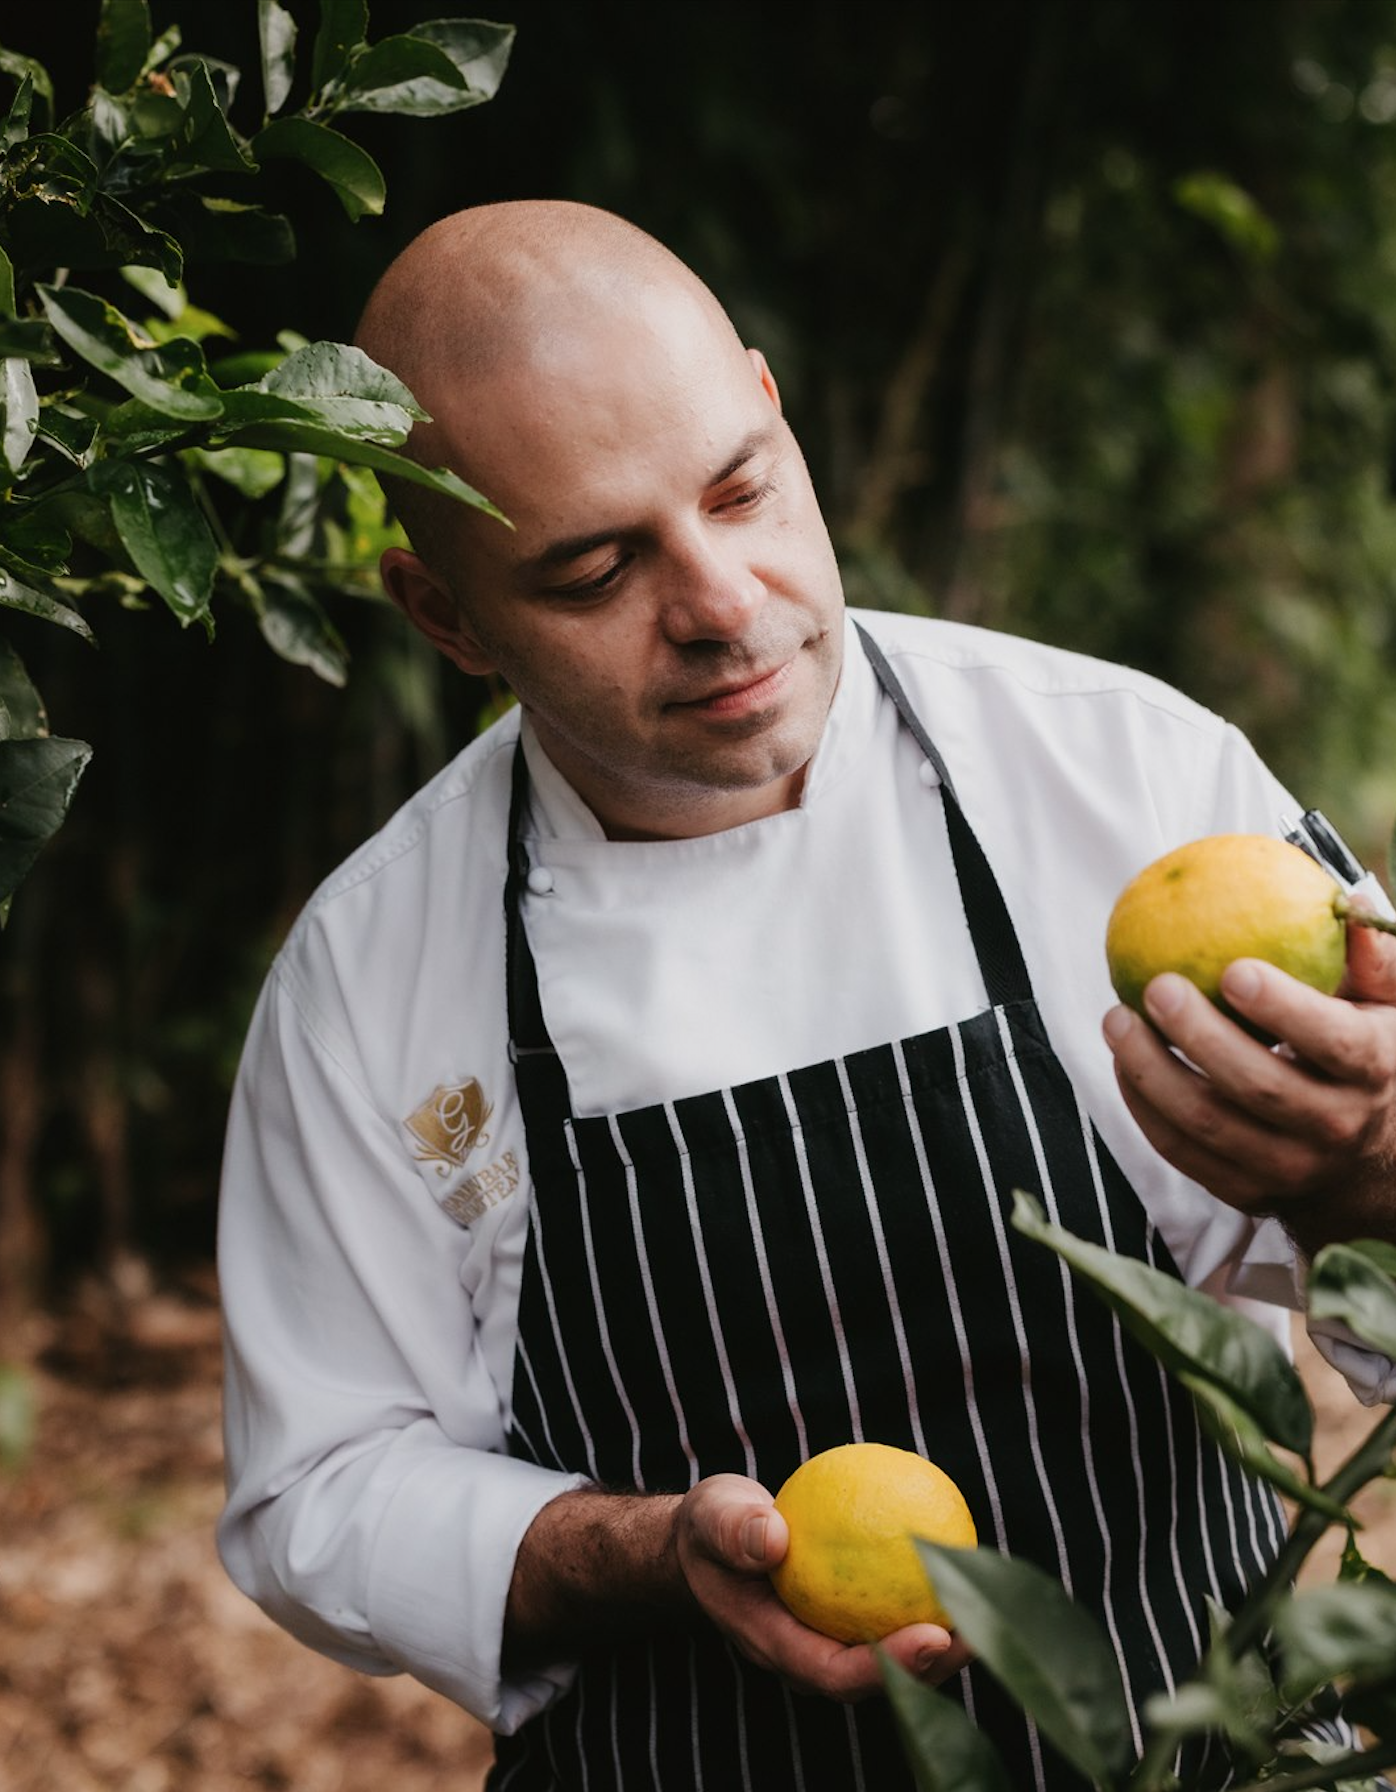 Head chef looks at lemon